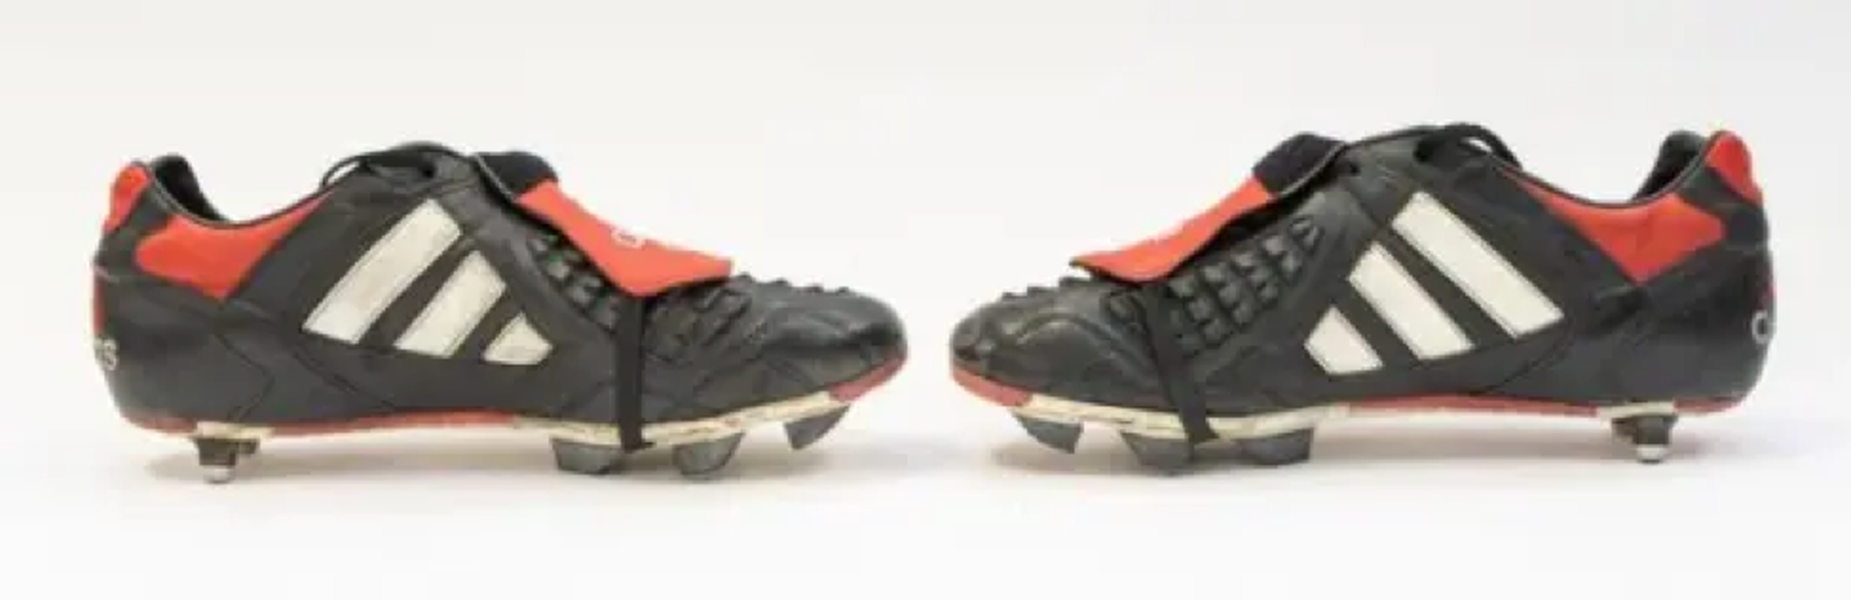 Đôi giày lỗi từ 26 năm trước của Beckham được bán với giá khủng